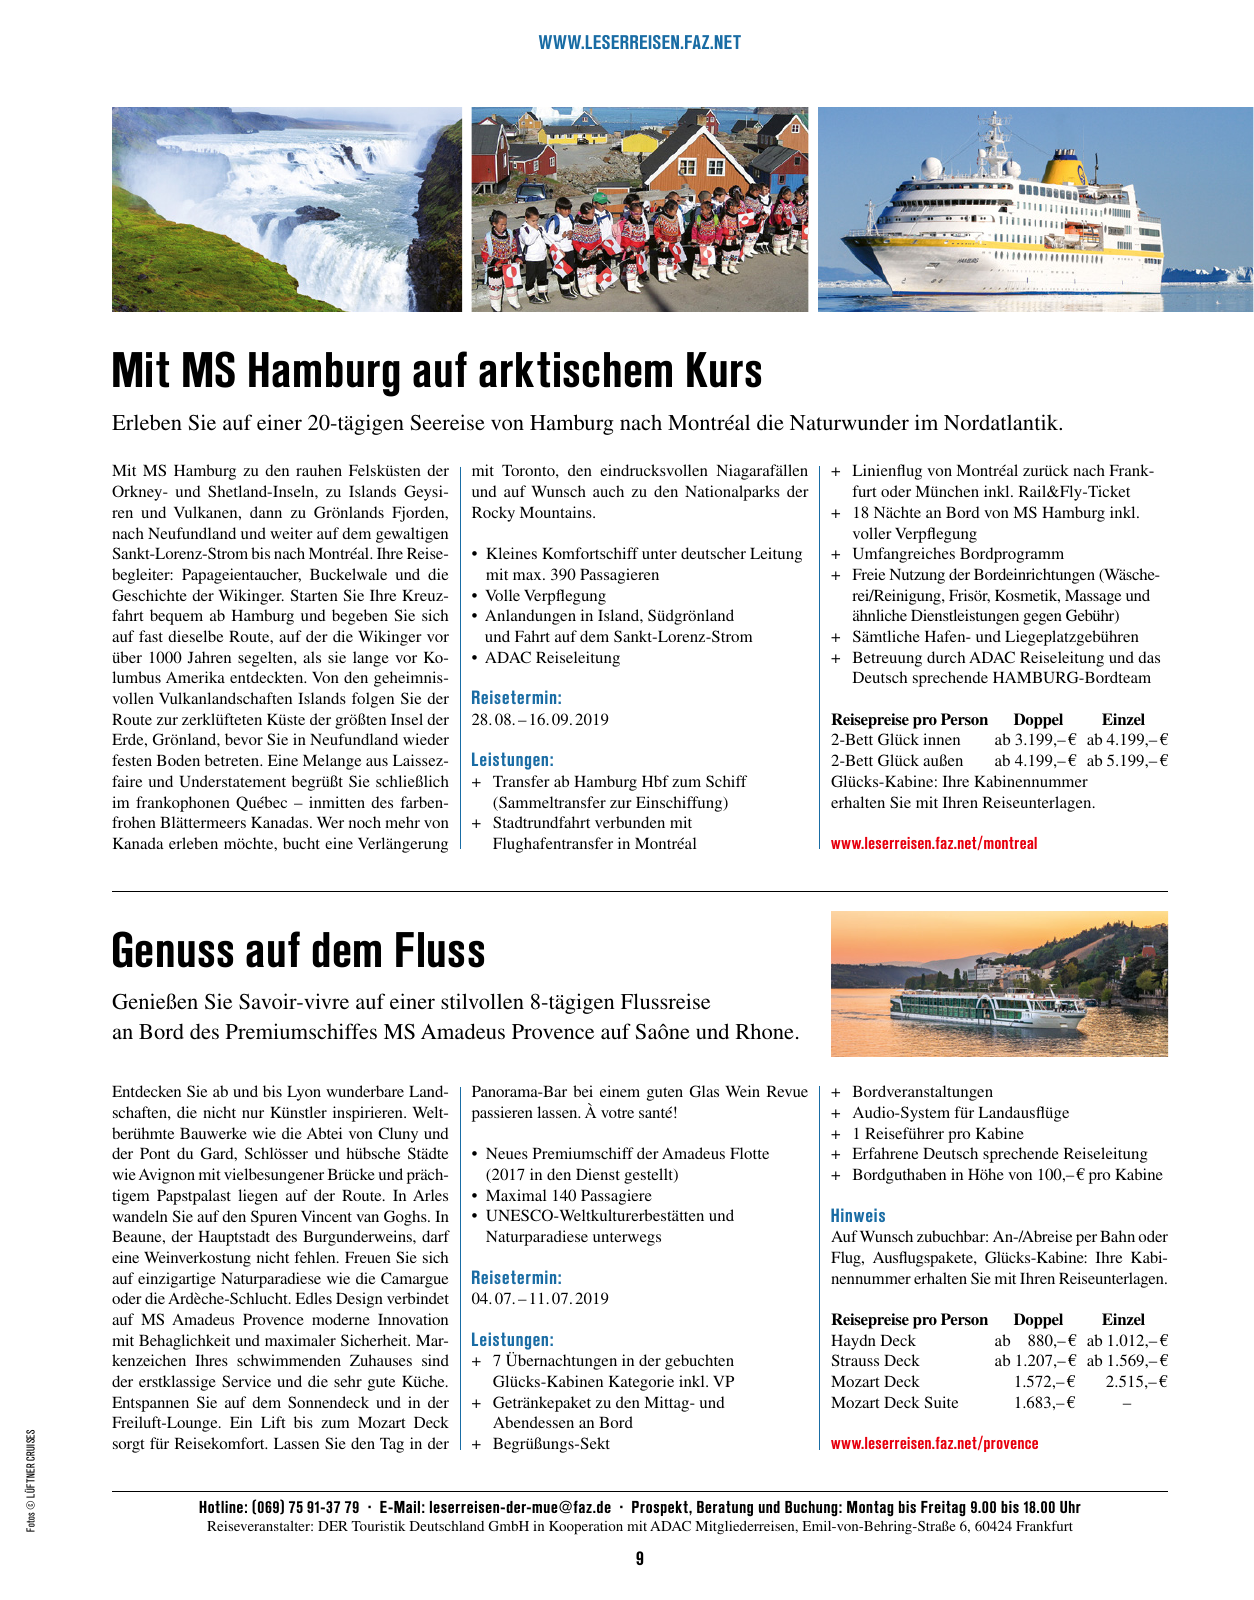 Vorschau F.A.Z. Leserreisen Katalog Traum- und Schiffsreisen Seite 9